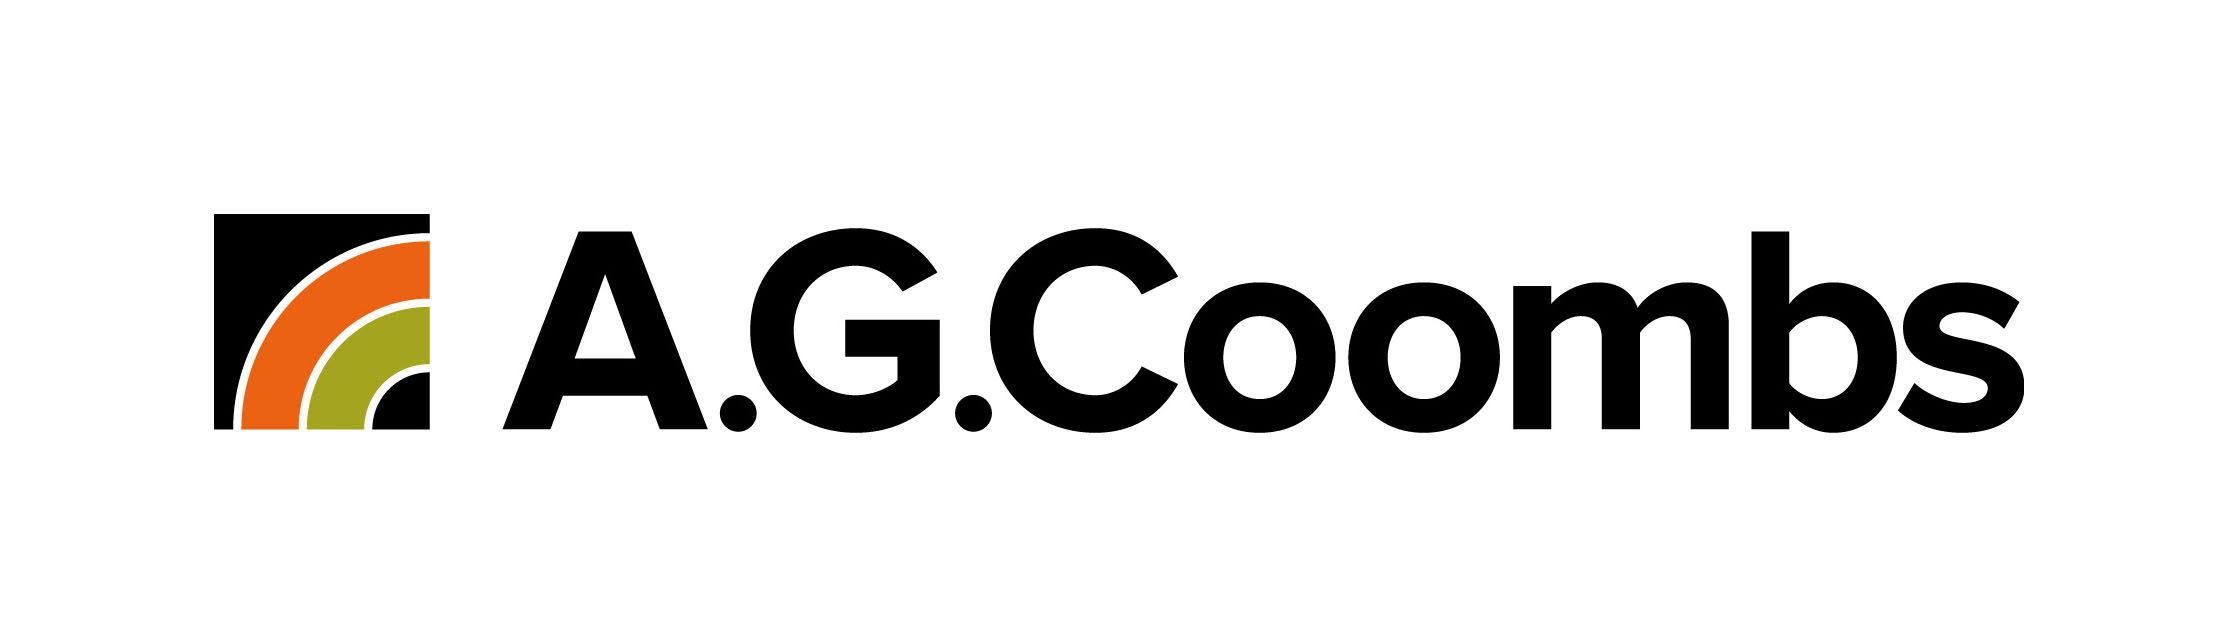 A.G. Coombs logo